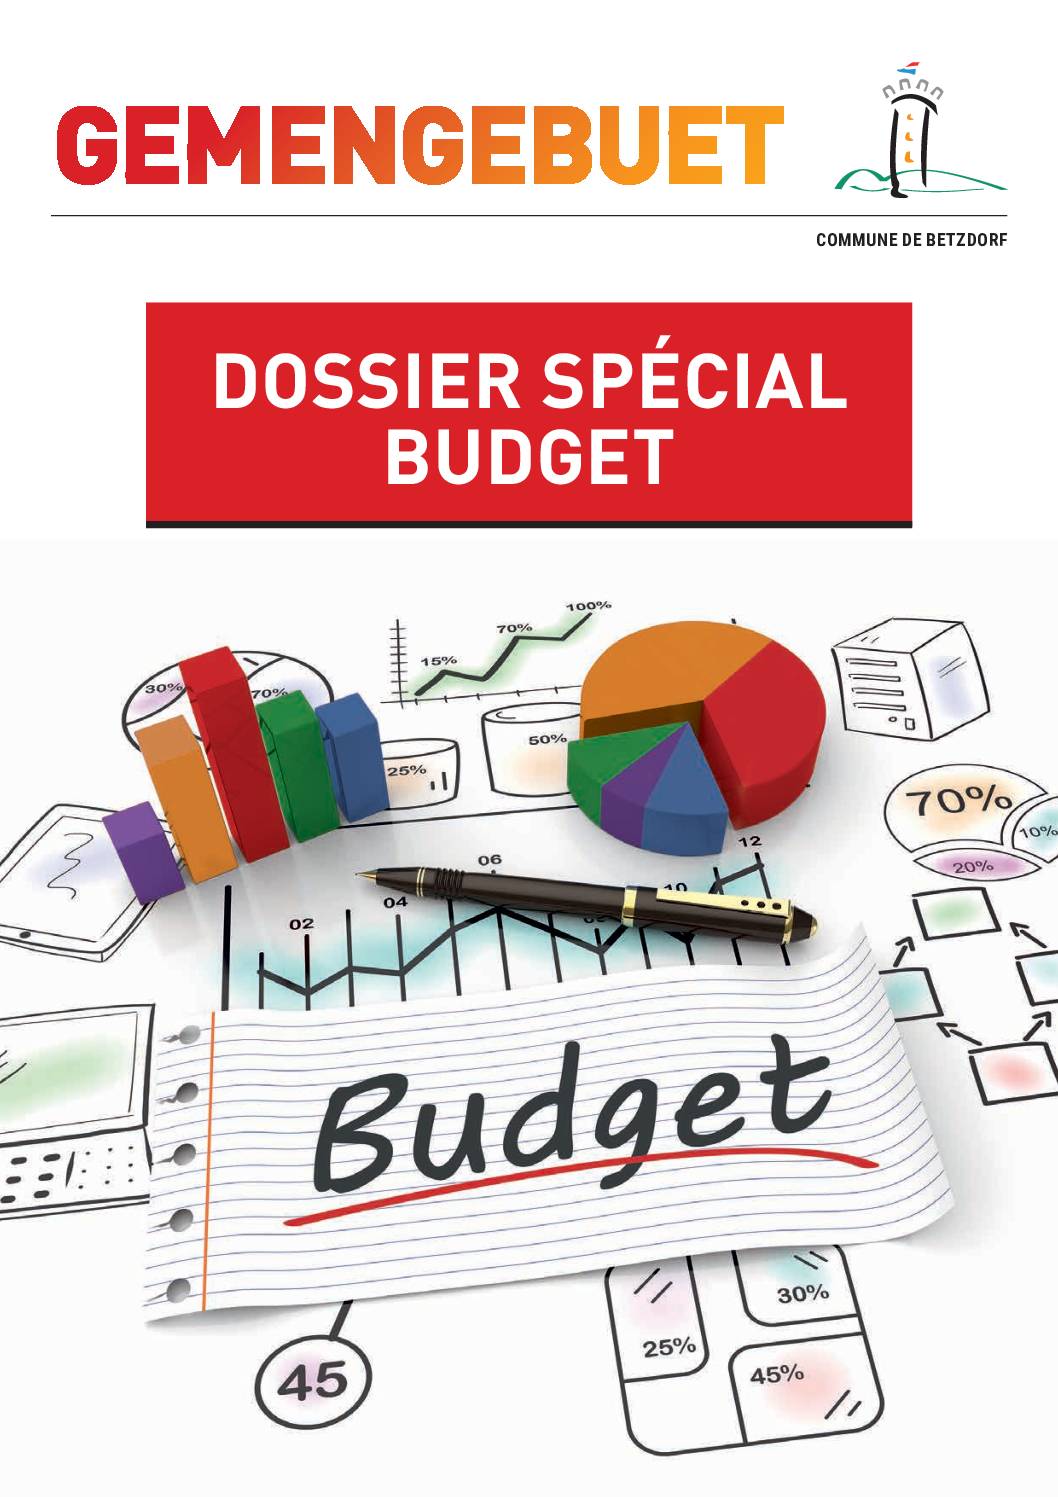 Gemengebuet - Dossier Spécial Budget 2021